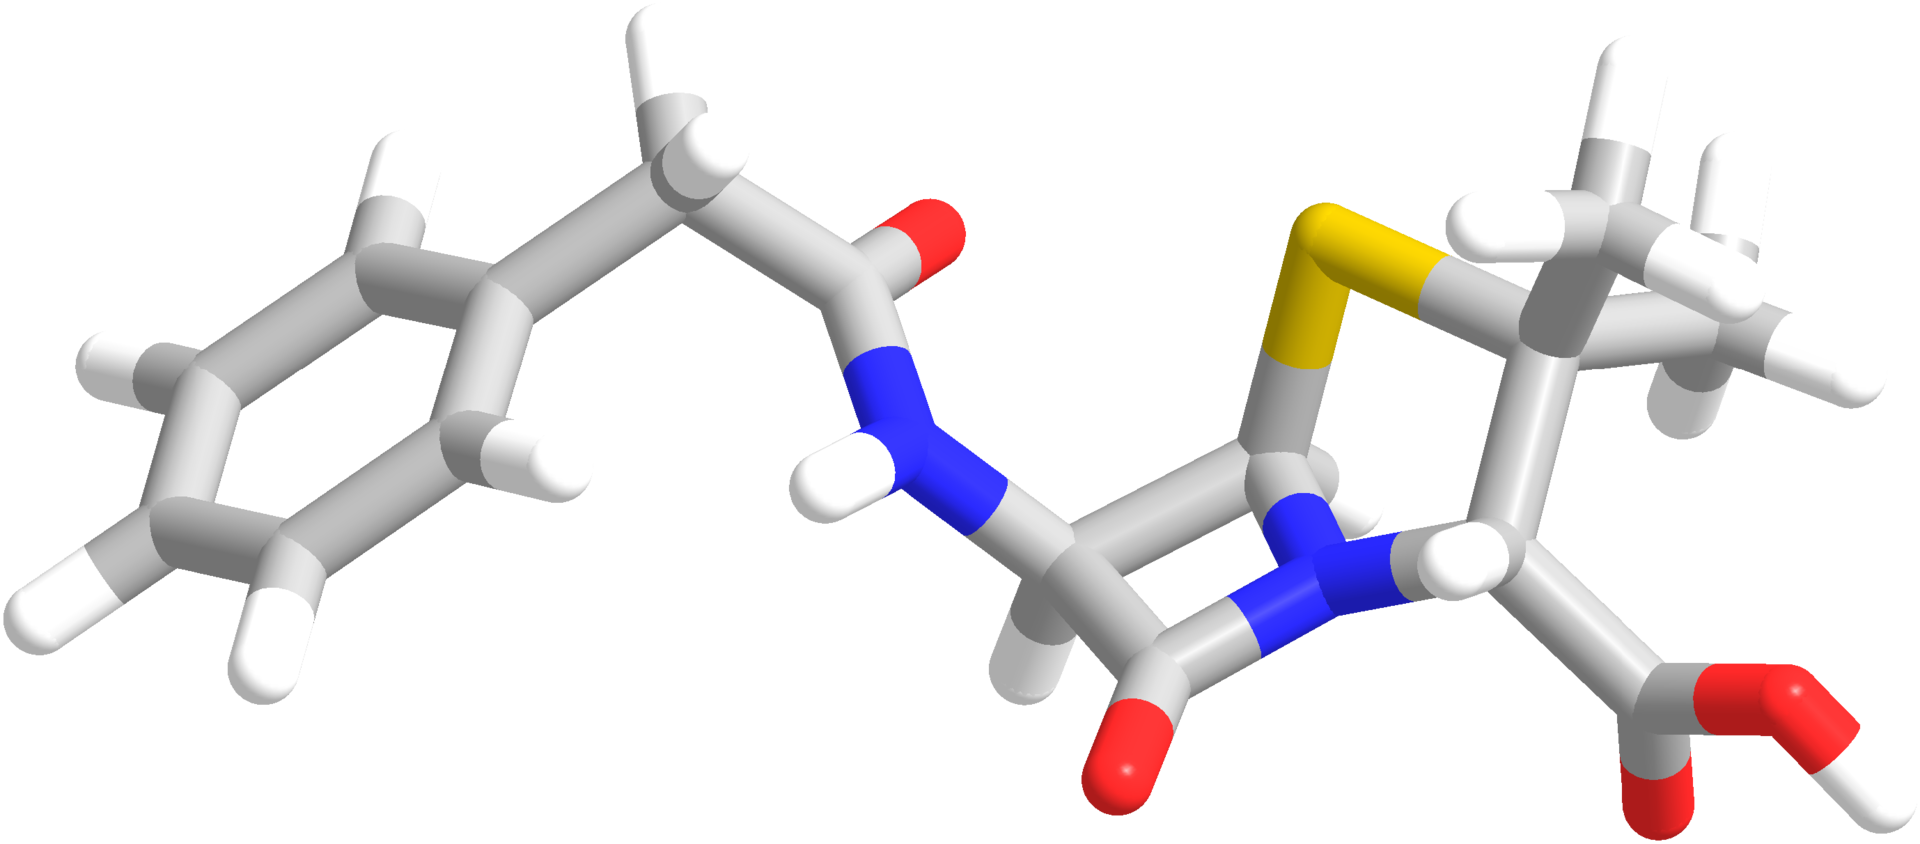 estructura quimica penicilina 3d - estructura-quimica-penicilina-3d